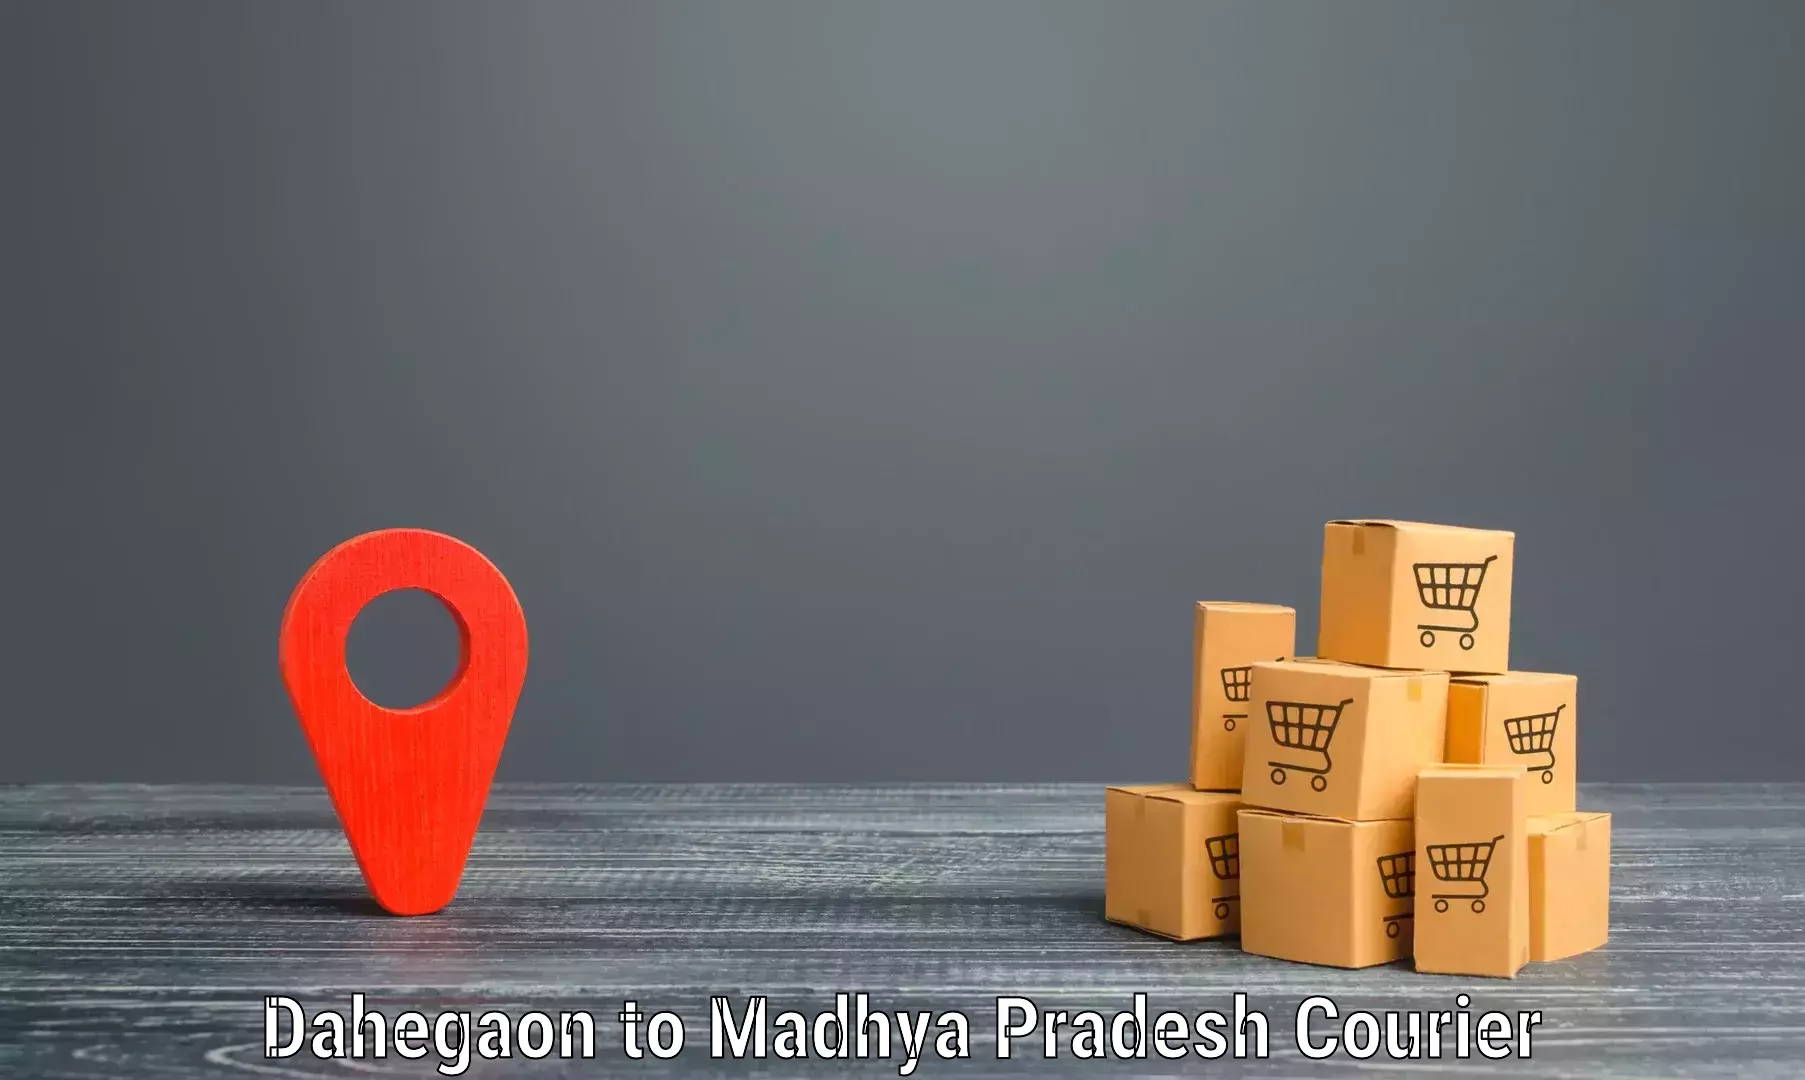 User-friendly delivery service Dahegaon to Gadarwara